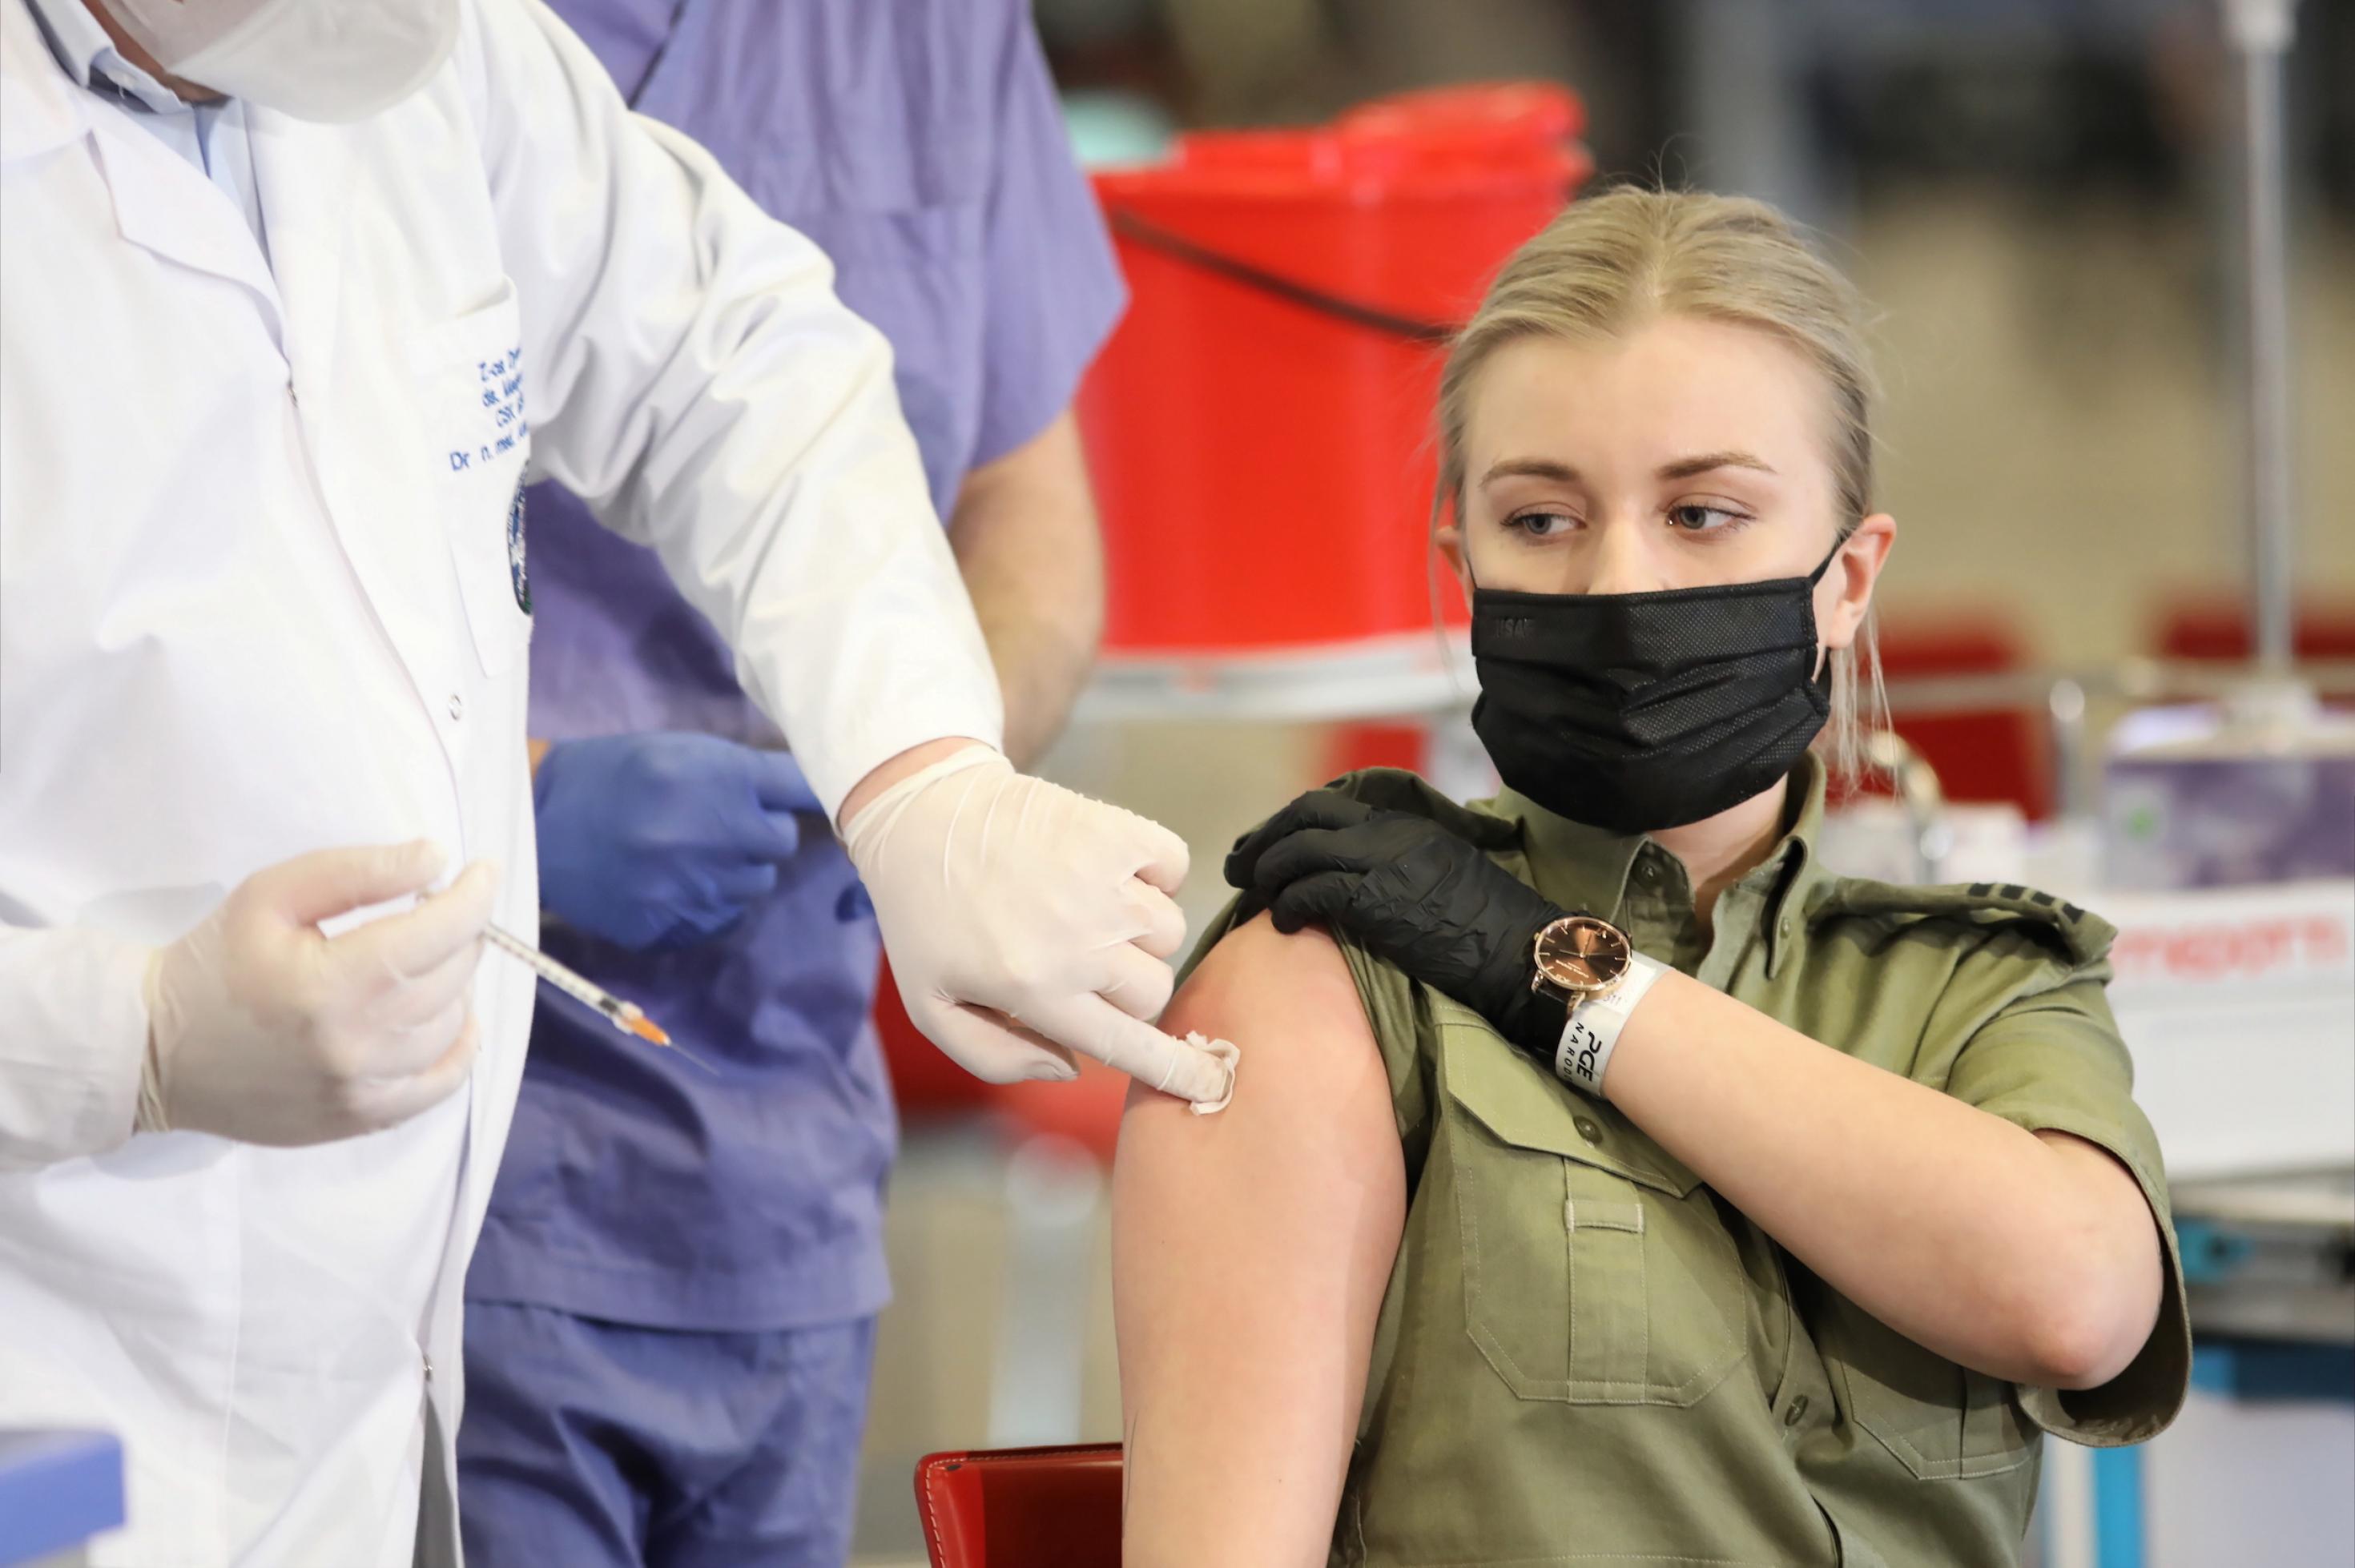 Eine junge blonde Soldatin sitzt auf einem Stuhl und bekommt den Astra-Zeneca-Impfstoff.